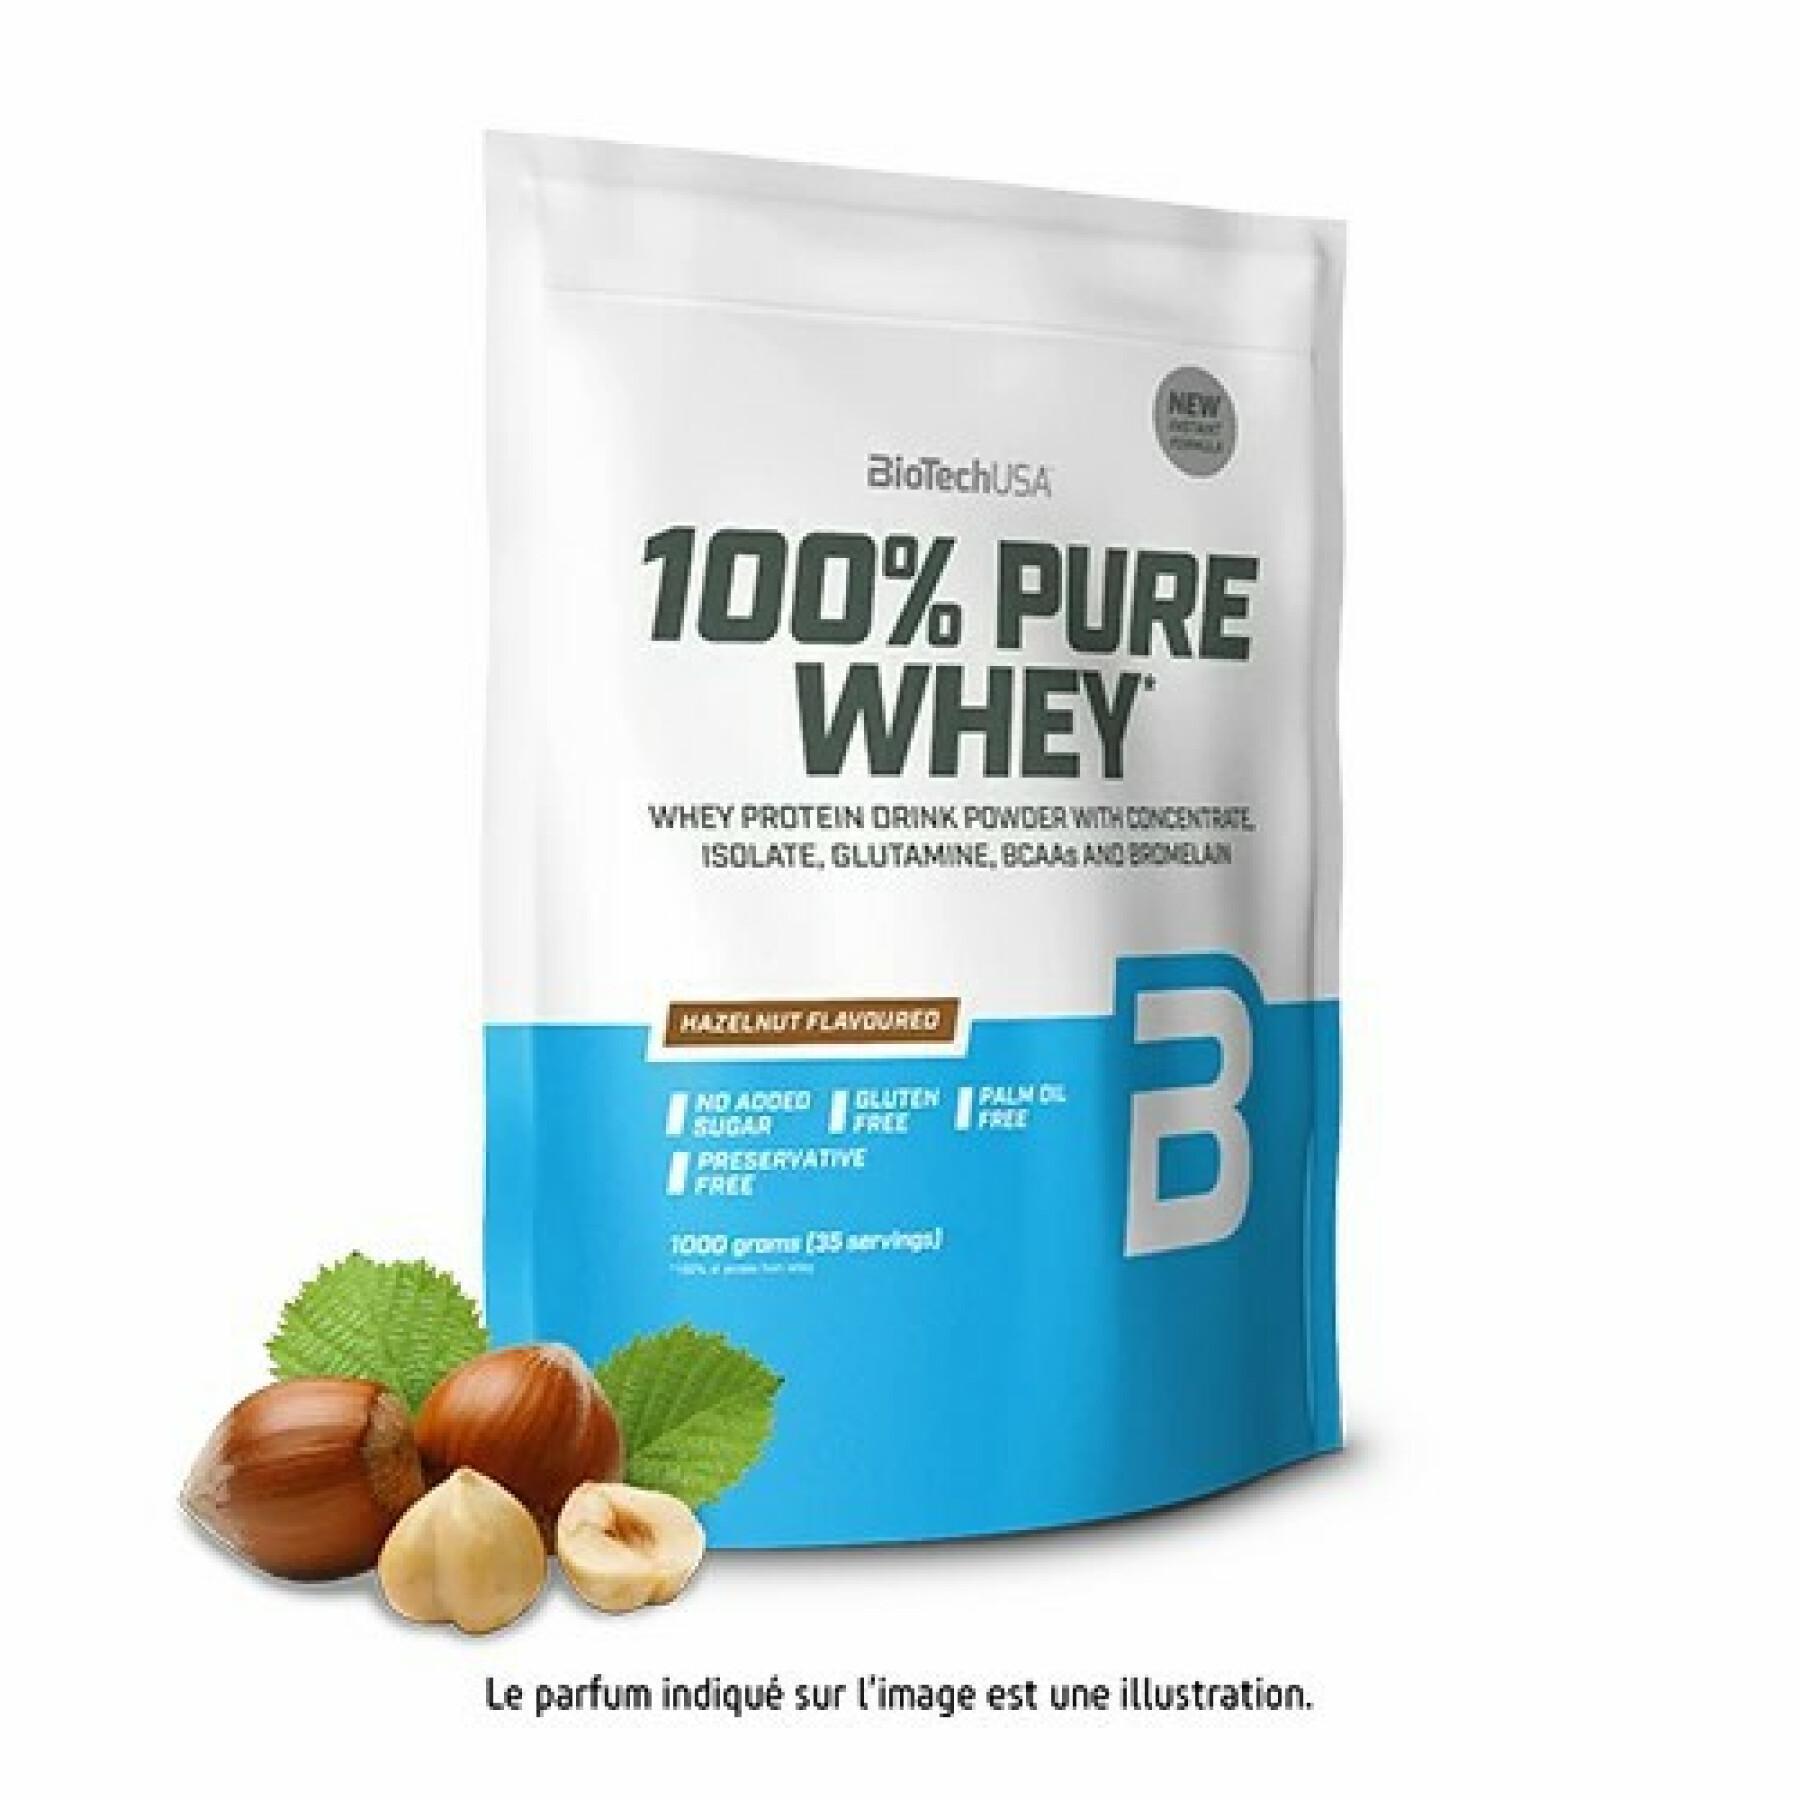 Paquete de 10 bolsas de proteína de suero 100% pura Biotech USA - Noisette - 1kg